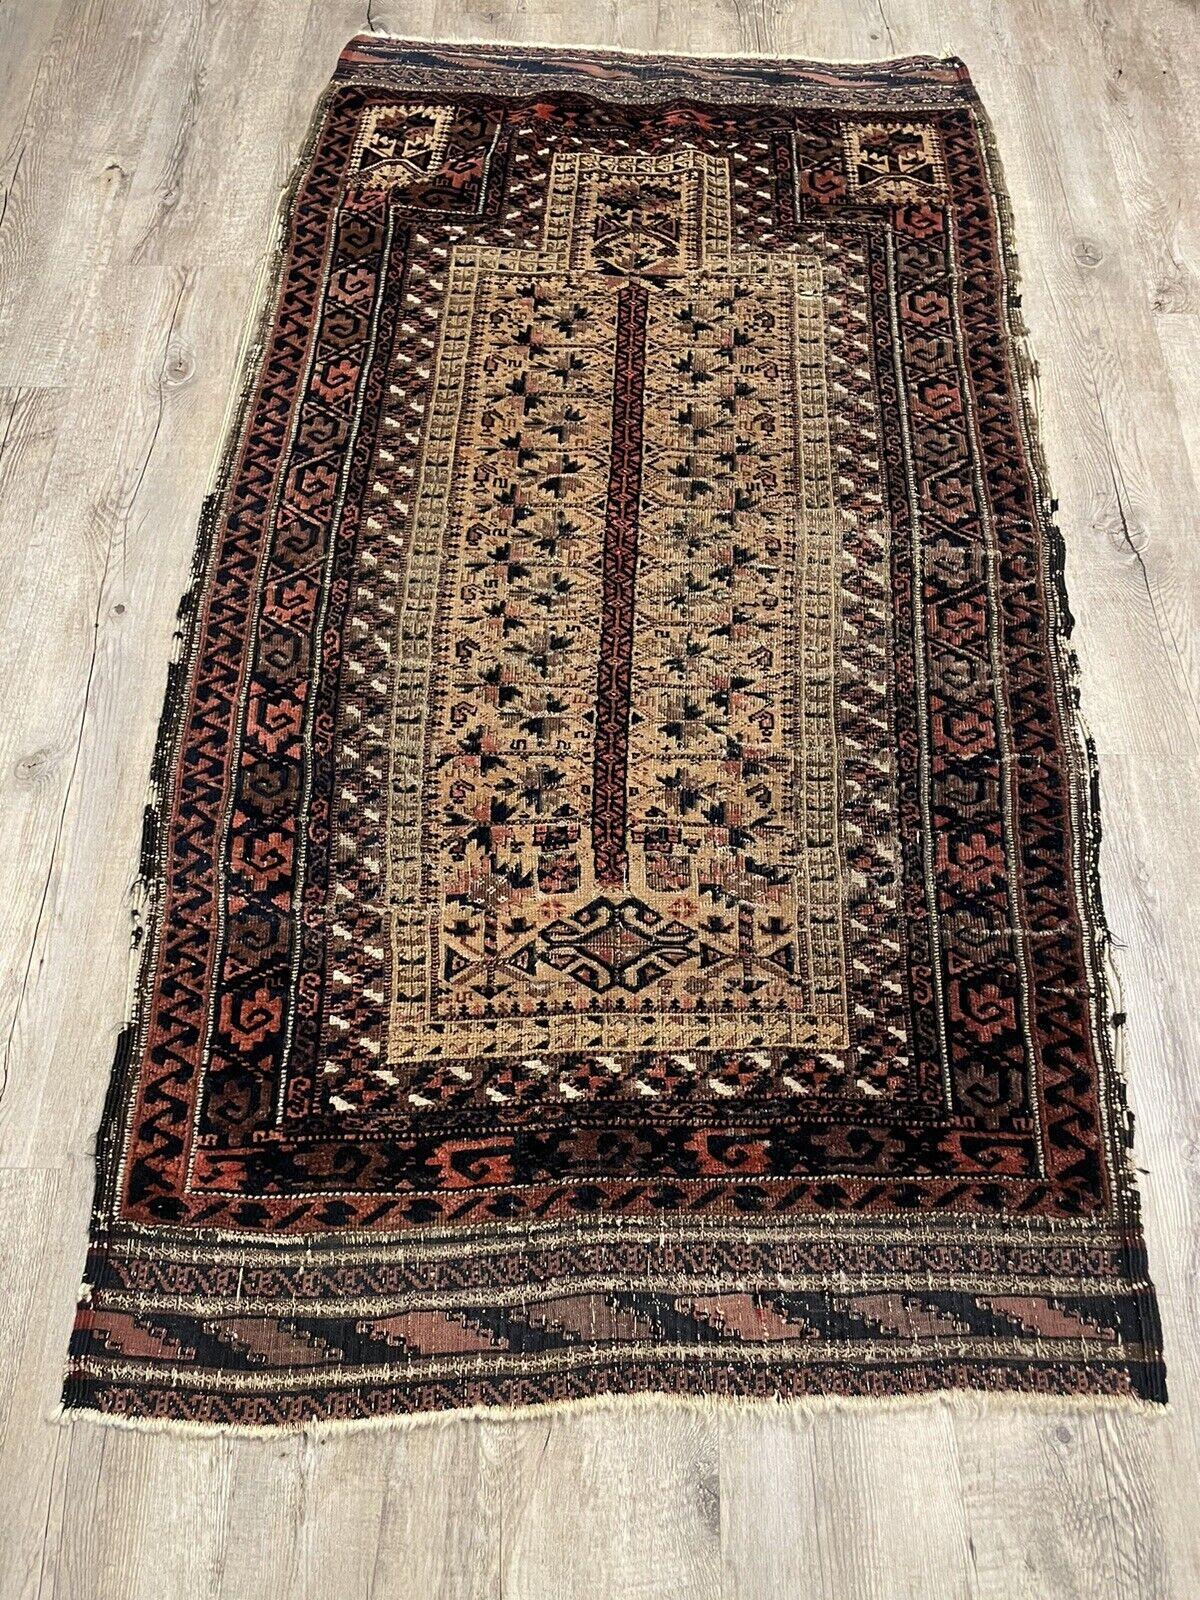 Verschönern Sie Ihren Raum mit dem zeitlosen Charme dieses handgefertigten antiken afghanischen Baluch-Sammlerteppichs aus dem späten 19. Jahrhundert. Dieser exquisite Teppich, der in Afghanistan von geschickten Kunsthandwerkern mit Sorgfalt